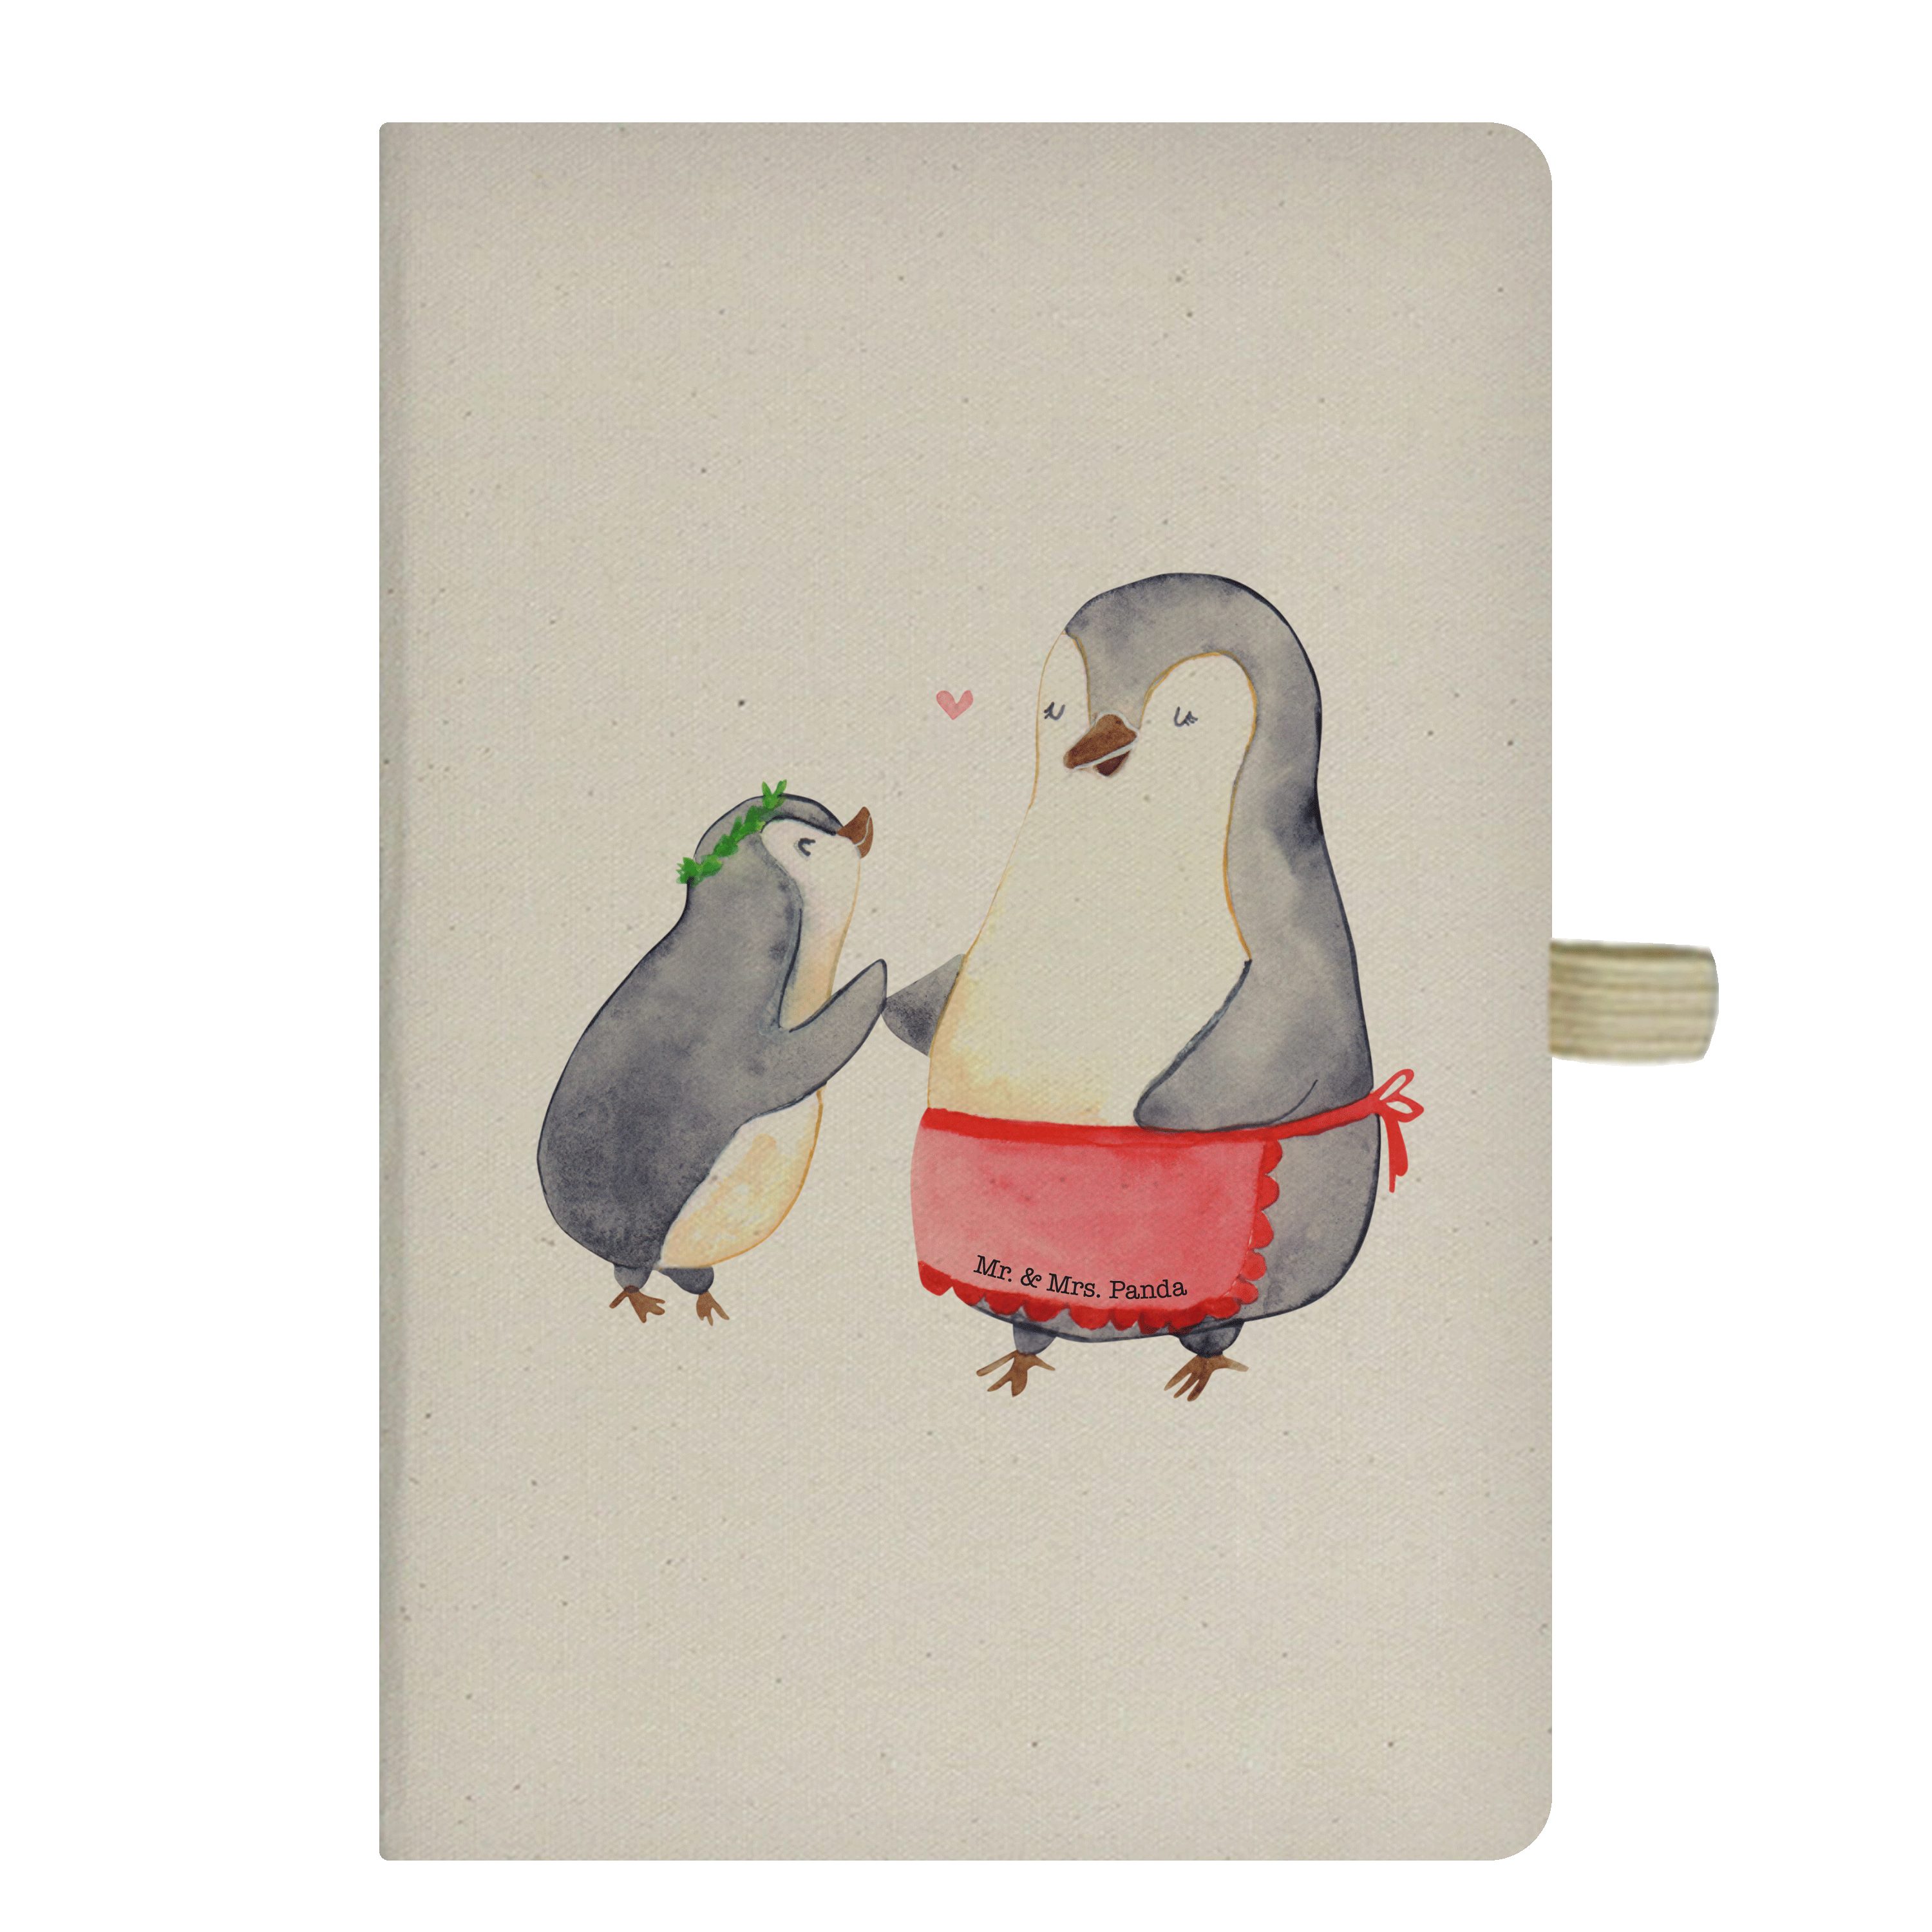 Mr. & Mrs. Panda Notizbuch Pinguin mit Kind - Transparent - Geschenk, Bruder, Pinguine, Notizen, Mr. & Mrs. Panda